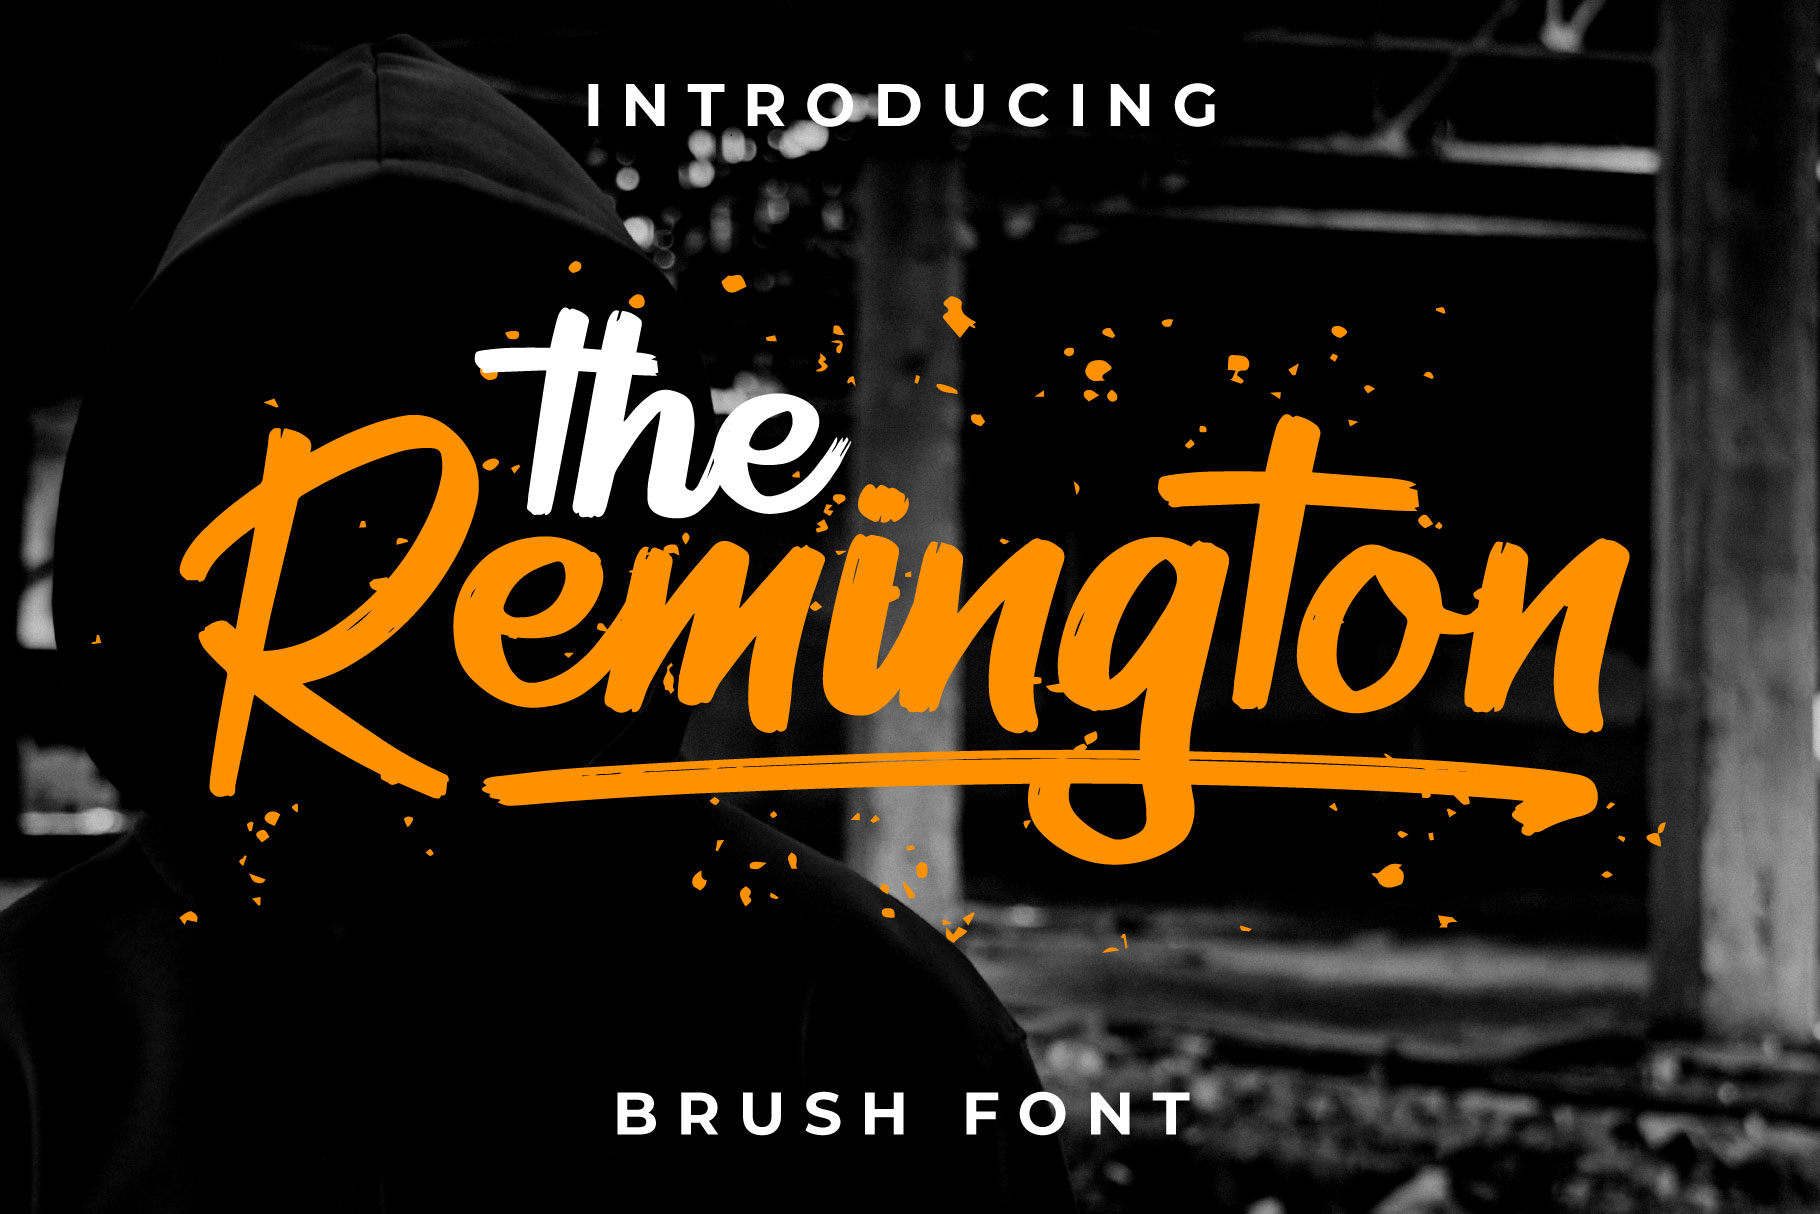 Remington Brush Font